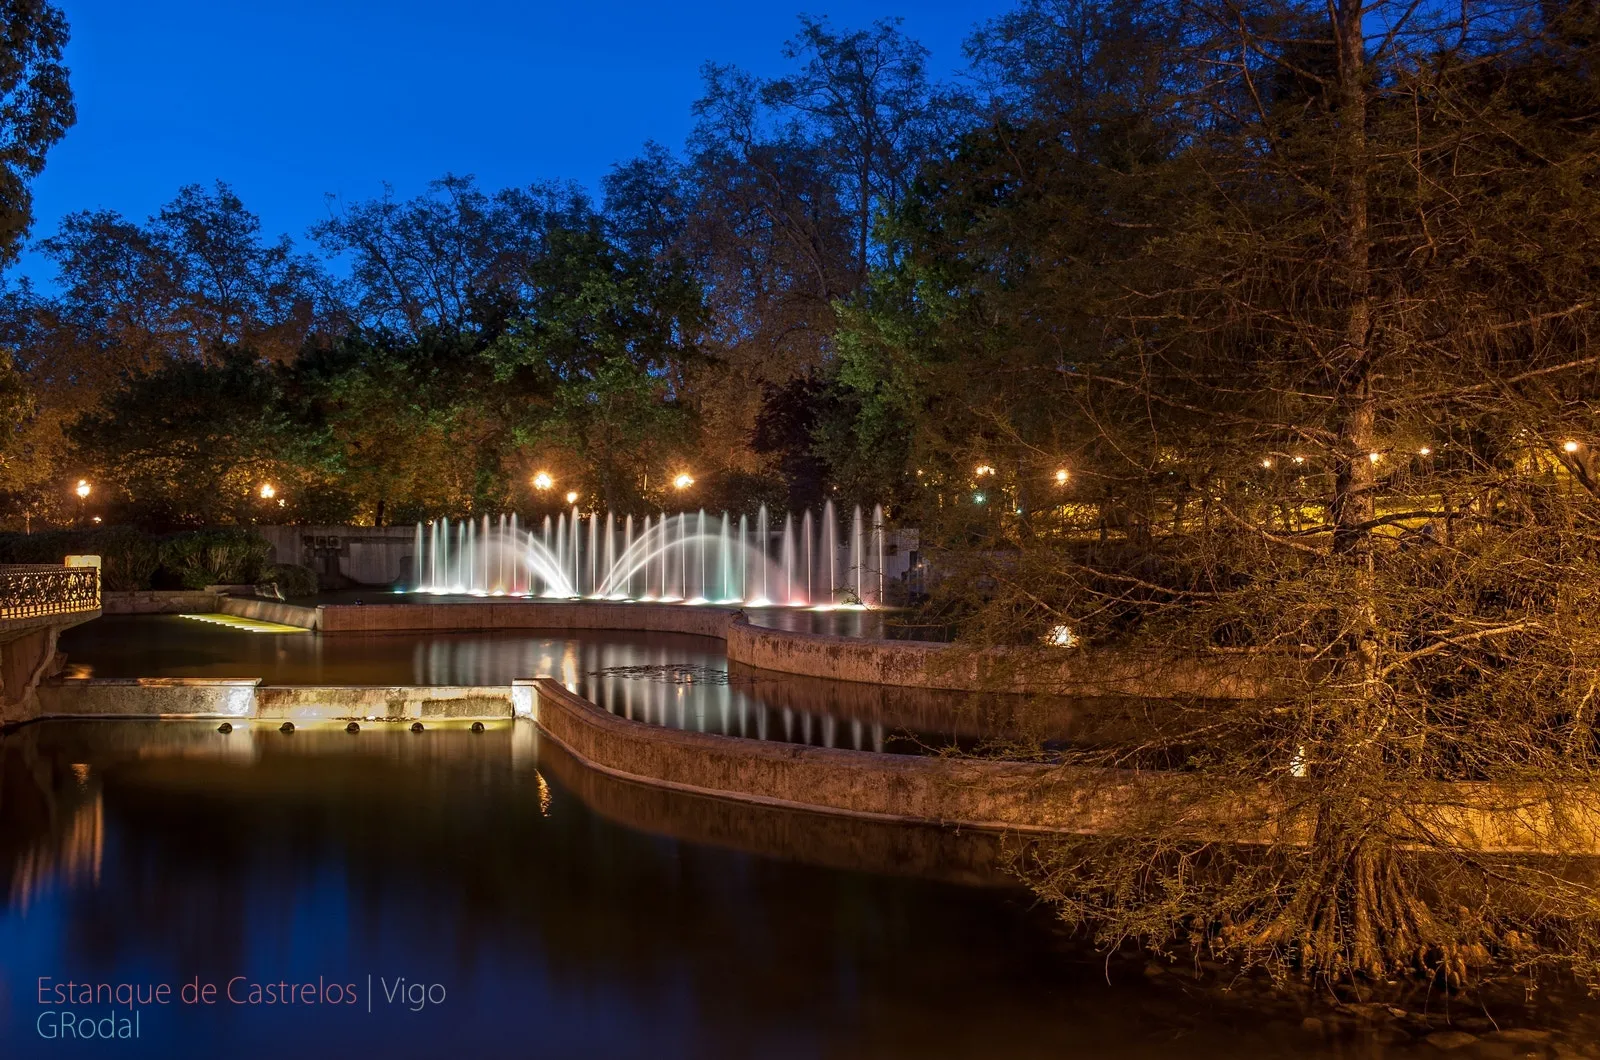 Photo showing: 500px provided description: Imagen tomada en el estanque de los patos en Castrelos, Vigo. No se ha utilizado ning?n filtro. El revelado de la imagen ha sido realizado con Photivo y Gimp. Publicada bajo licencia Creative Commons - Attribution-ShareAlike [#Landscape ,#Park ,#Long Exposure ,#Night ,#Galicia ,#Urban ,#Paisaje ,#Nocturna ,#Pond ,#Fountain ,#Vigo ,#Urbano ,#Agua ,#Parque ,#Fuente ,#Larga Exposici?n ,#Estanque ,#Castrelos]